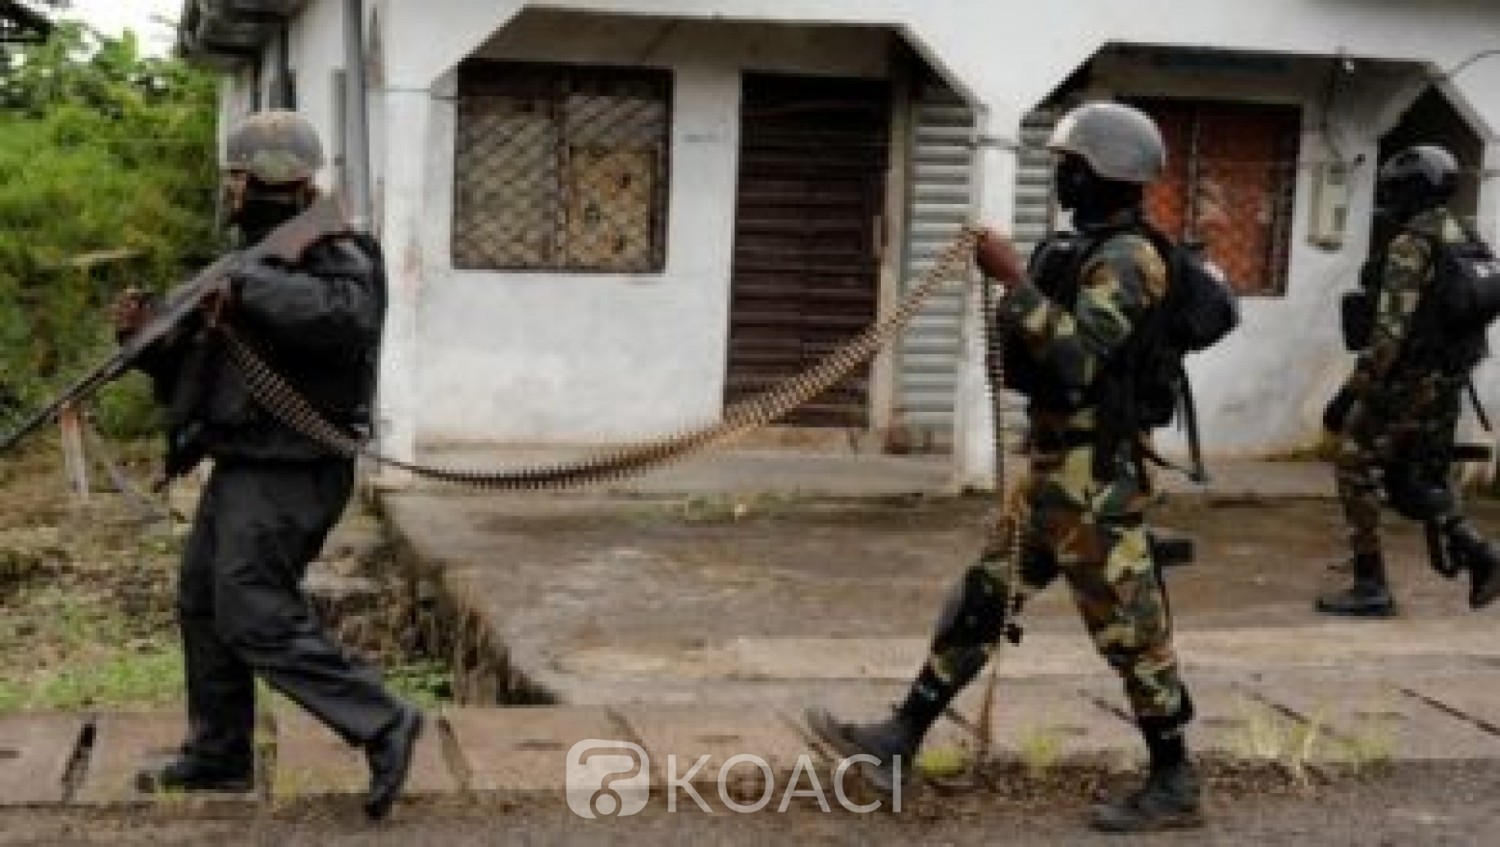 Cameroun : Les tensions politiques et ethniques menacent le « vivre-ensemble », selon International Crisis Group